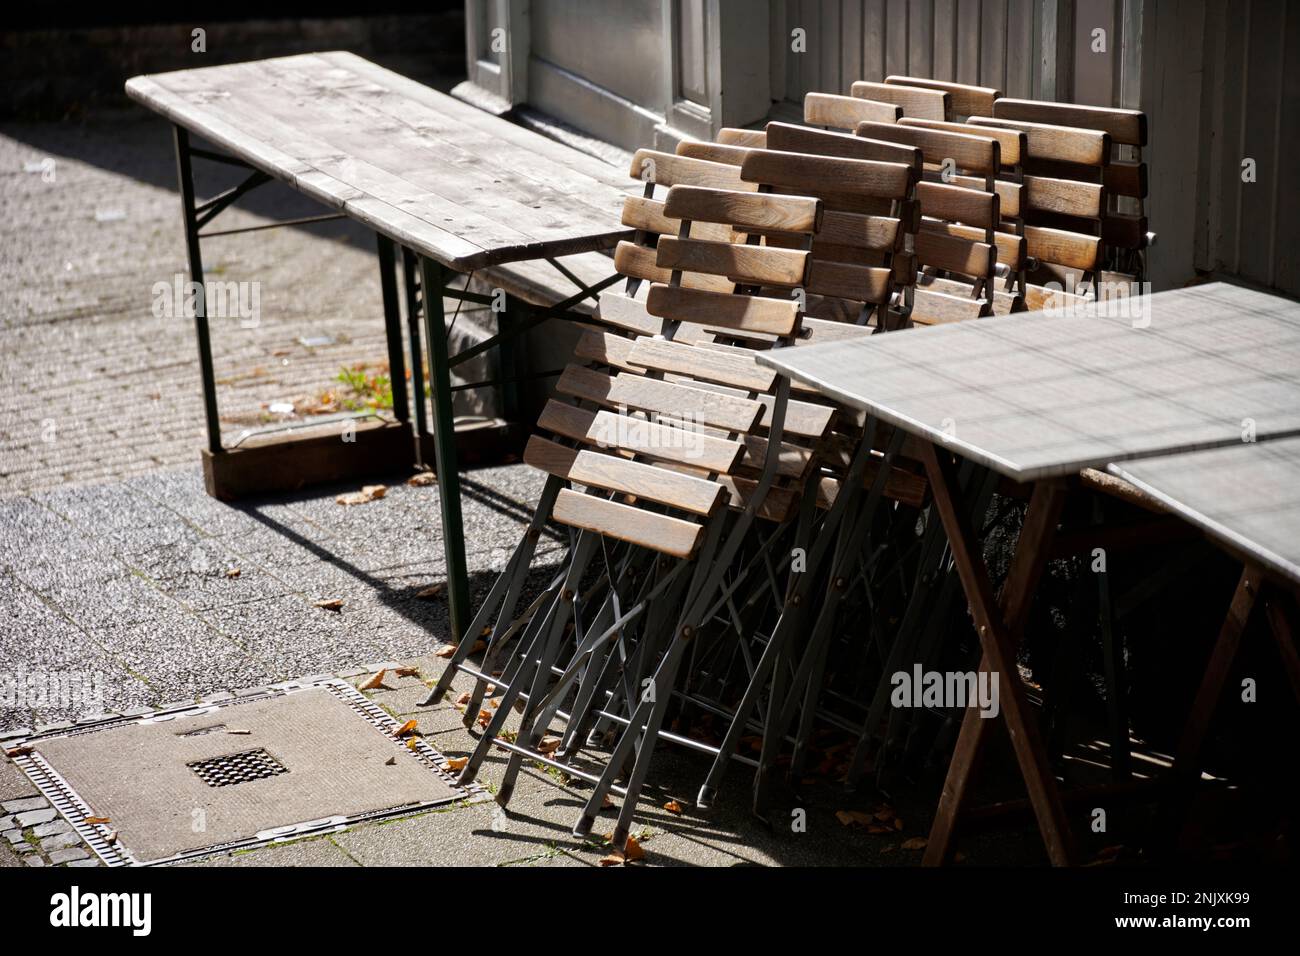 Zusammengeklappte Holzstühle im Aussengastrobereich in der Altstadt Hattingen. Sie werden von der Sonne beschienen. Foto de stock